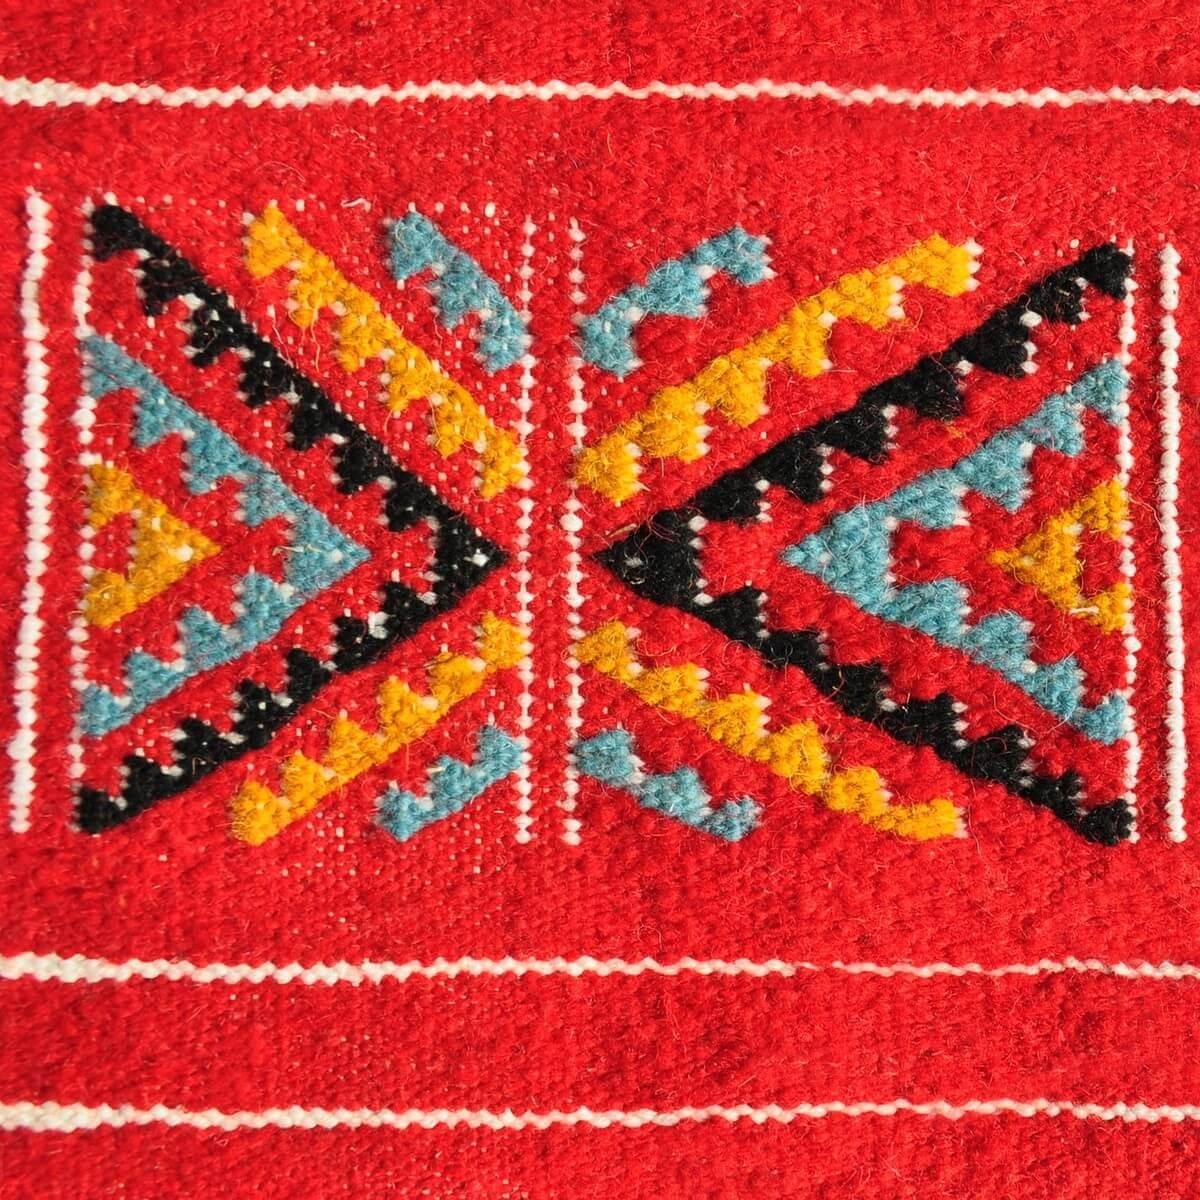 Tapete berbere Tapete Kilim Tazarka 115x220 Multicor (Tecidos à mão, Lã, Tunísia) Tapete tunisiano kilim, estilo marroquino. Tap